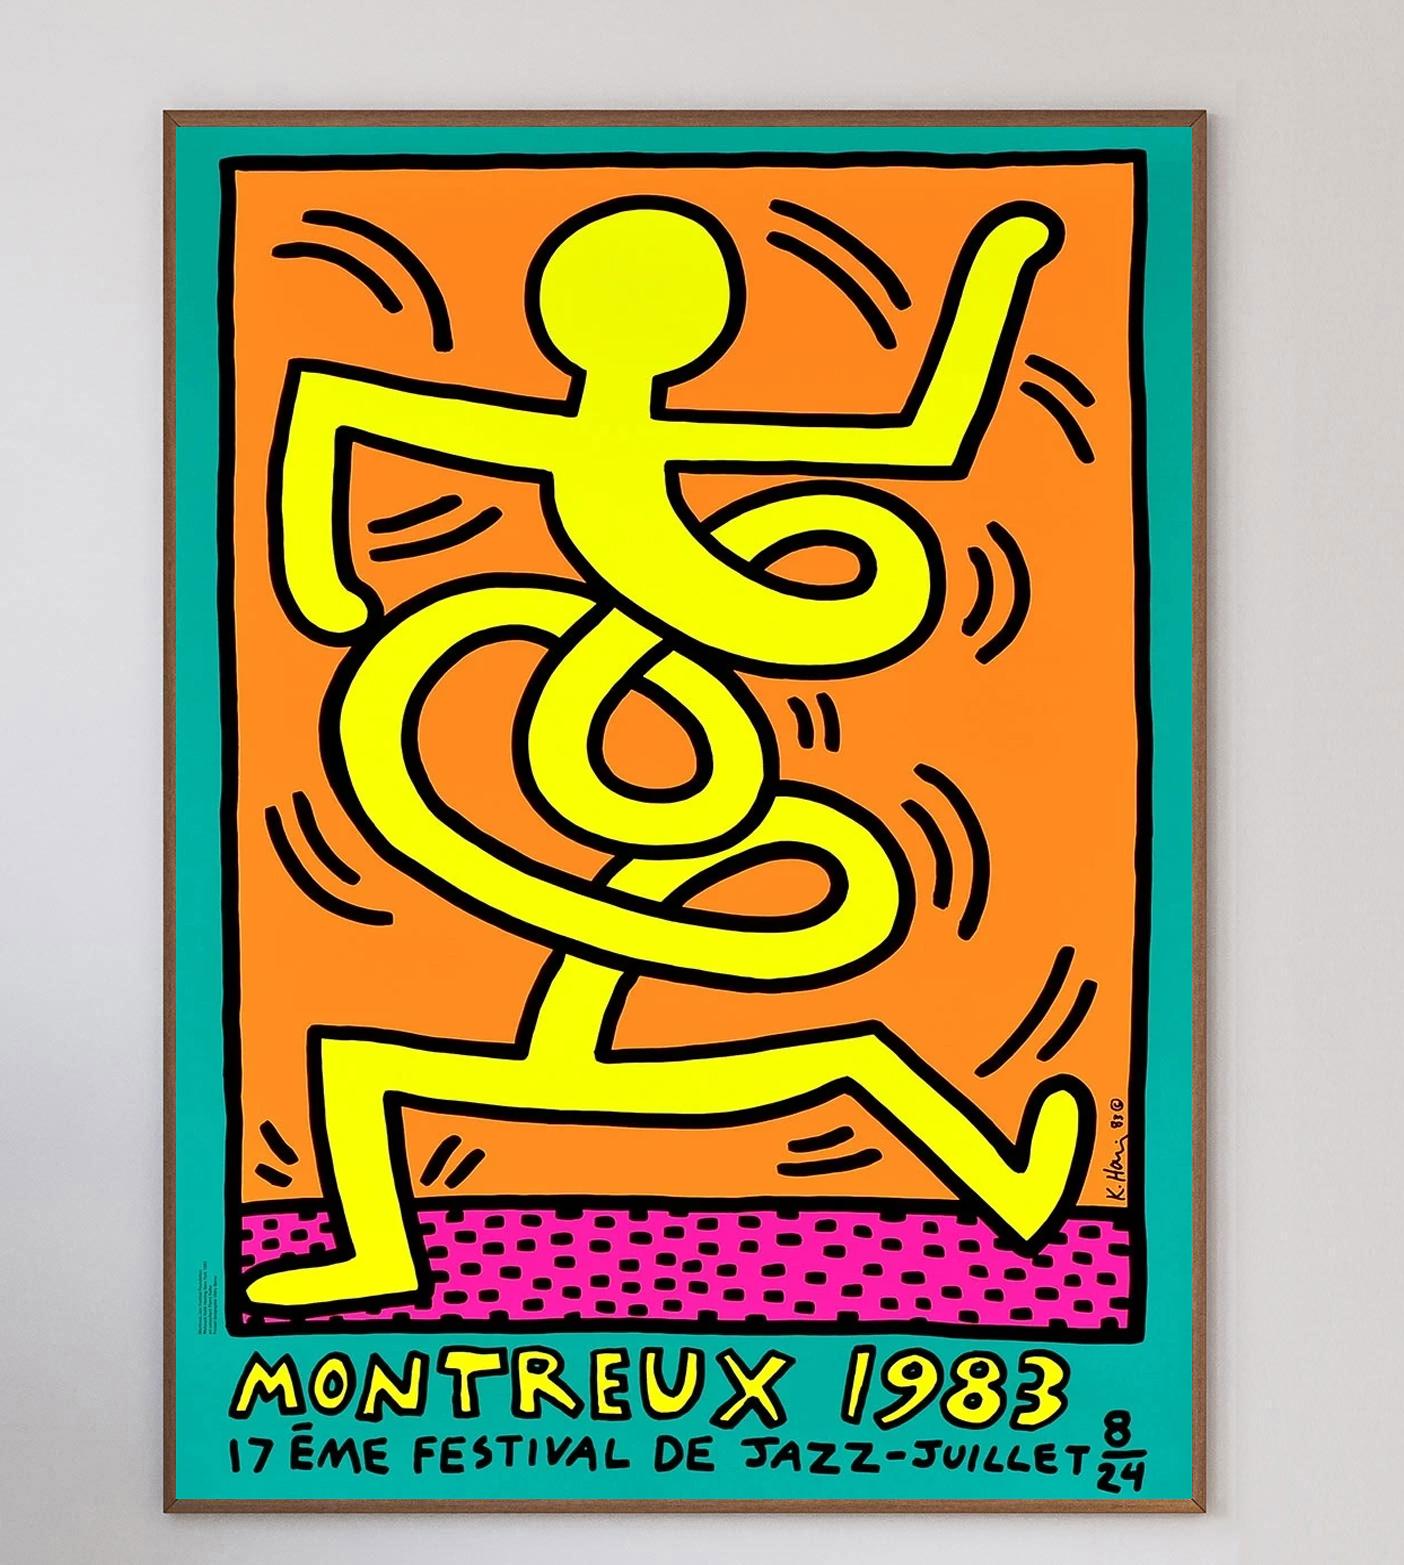 En 1983, Keith Haring a été invité à créer une affiche pour l'emblématique festival de jazz de Montreux. Il a alors soumis trois dessins qui ont été immédiatement acceptés. Haring s'est rendu à Montreux pour l'événement et a passé tout son temps à